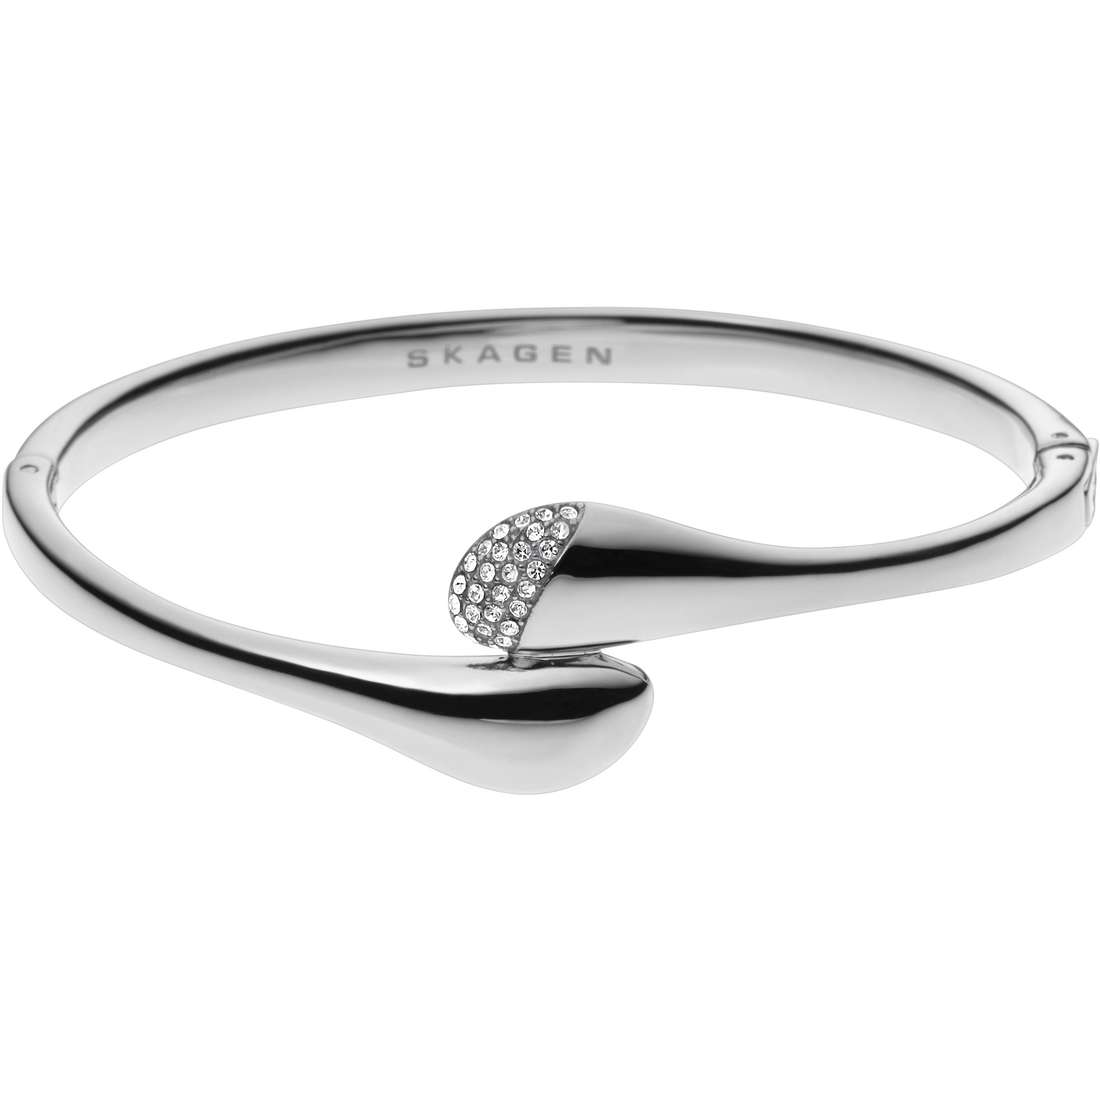 bracelet woman jewellery Skagen Fall 2014 SKJ0414040